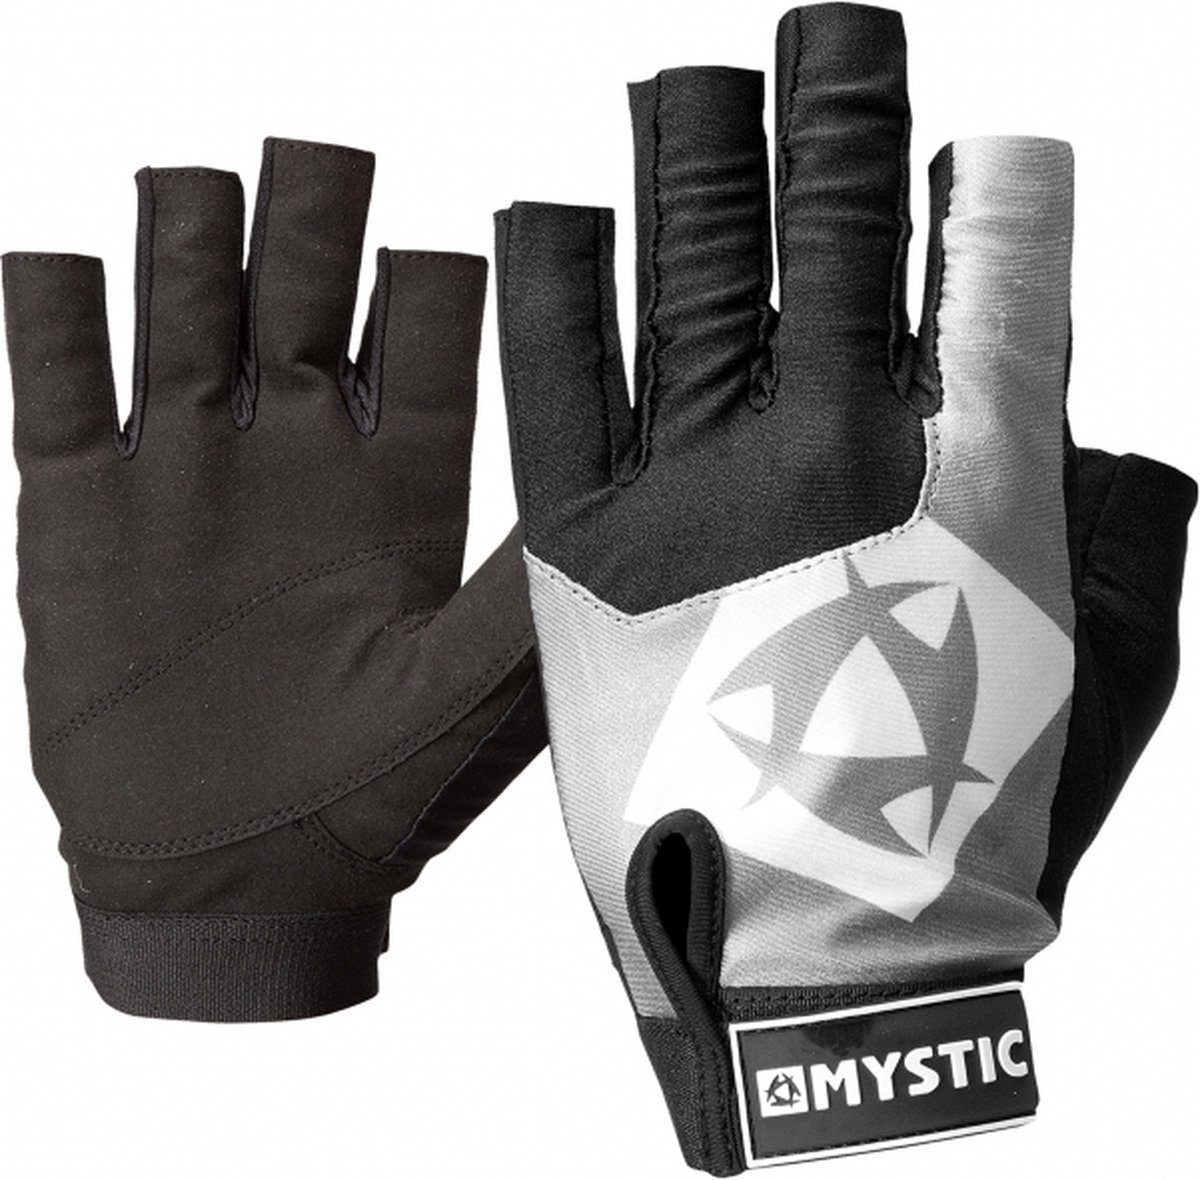 Mystic Rash handschoenen - Black - XS